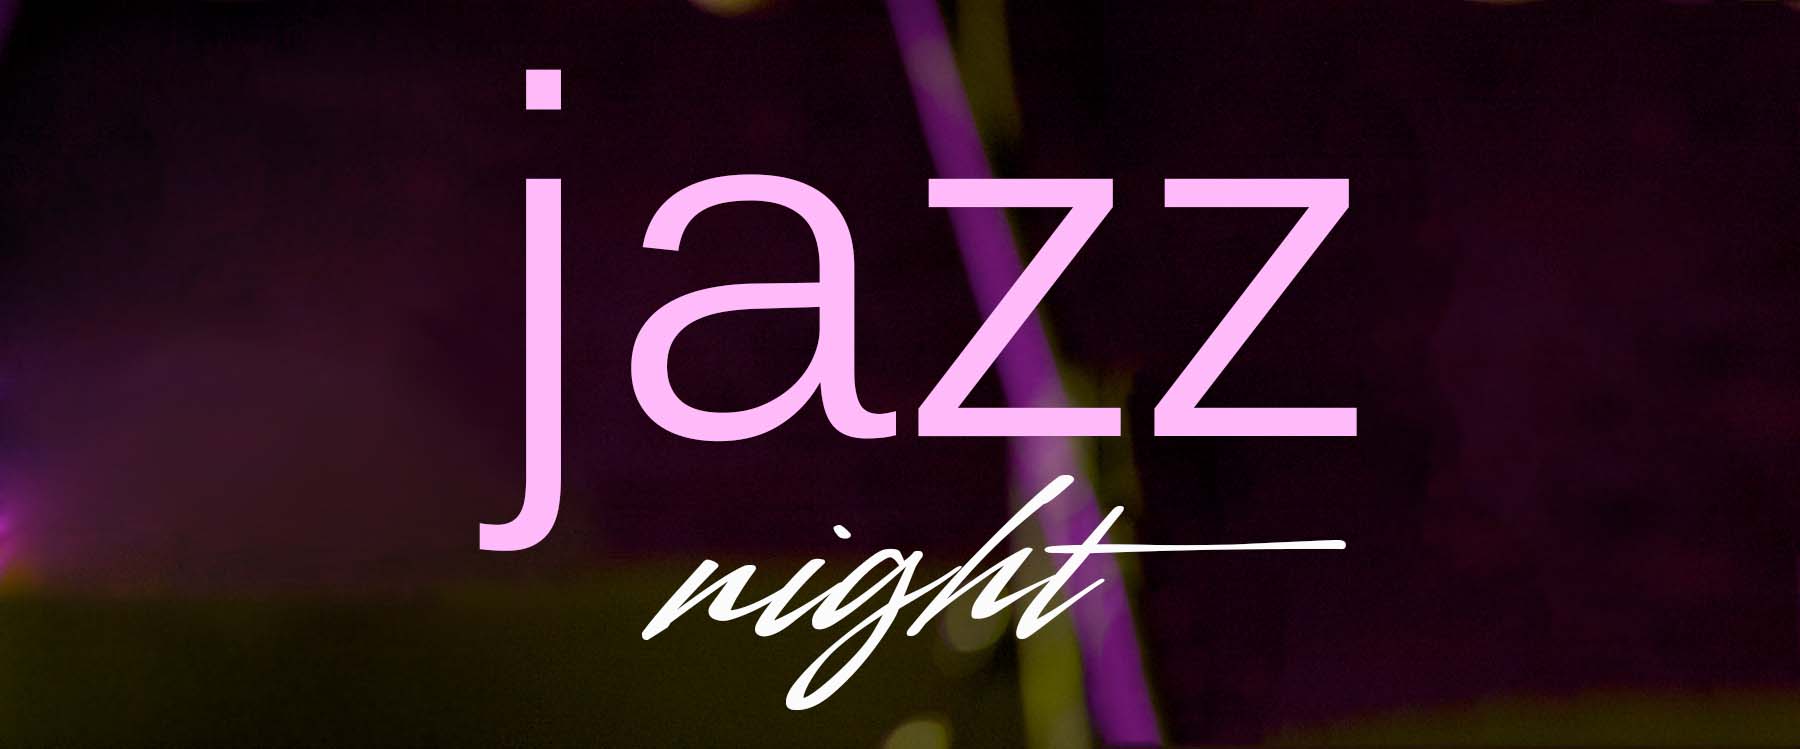 Jazz night logo